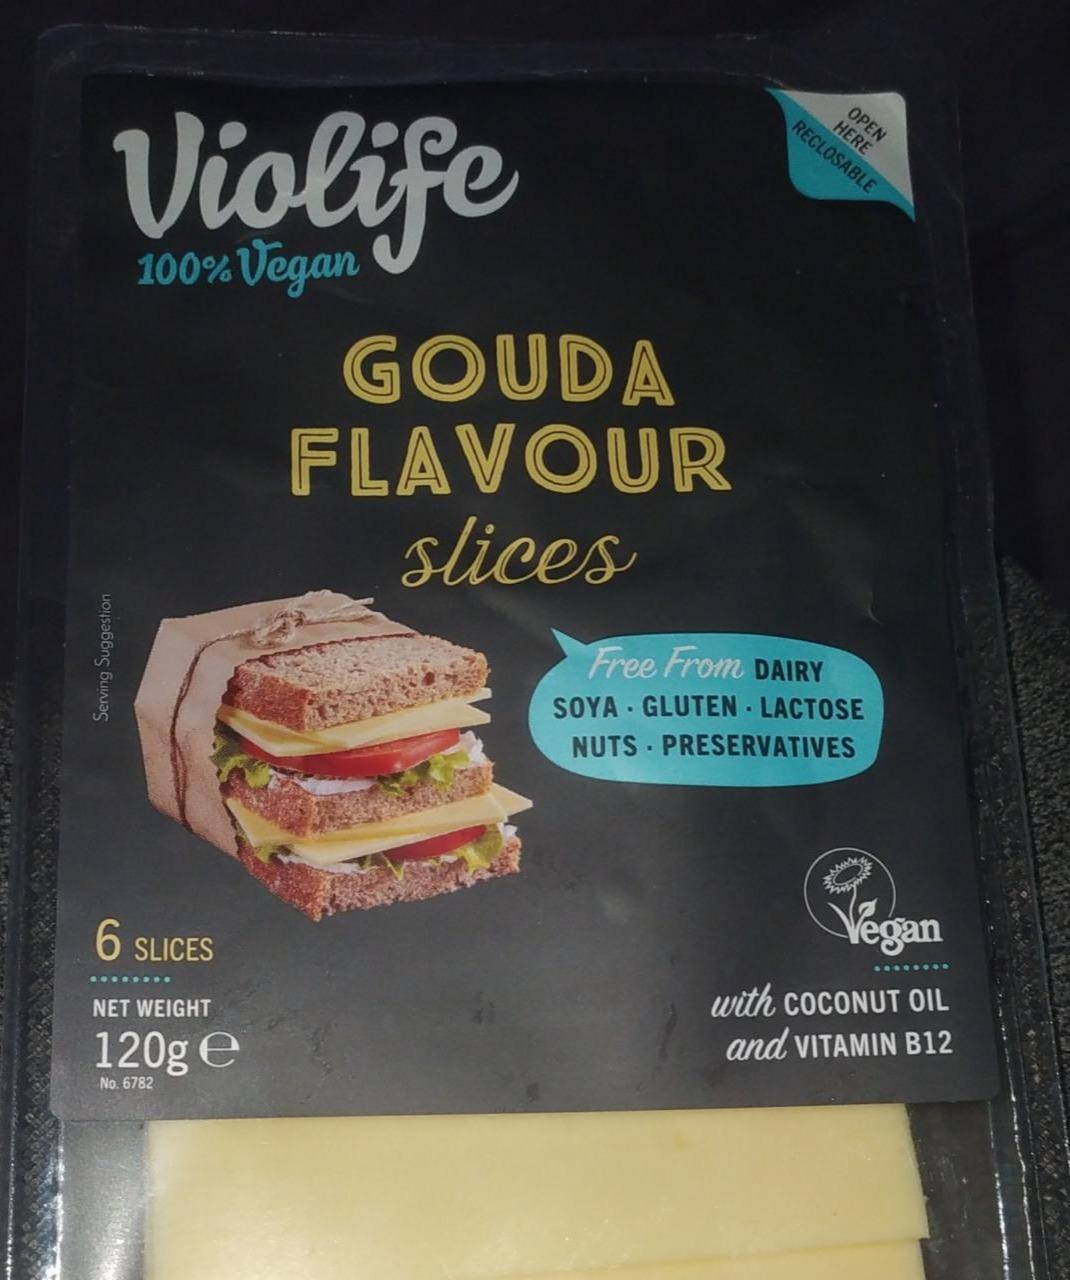 Fotografie - Gouda flavour slices 100% Vegan Violife